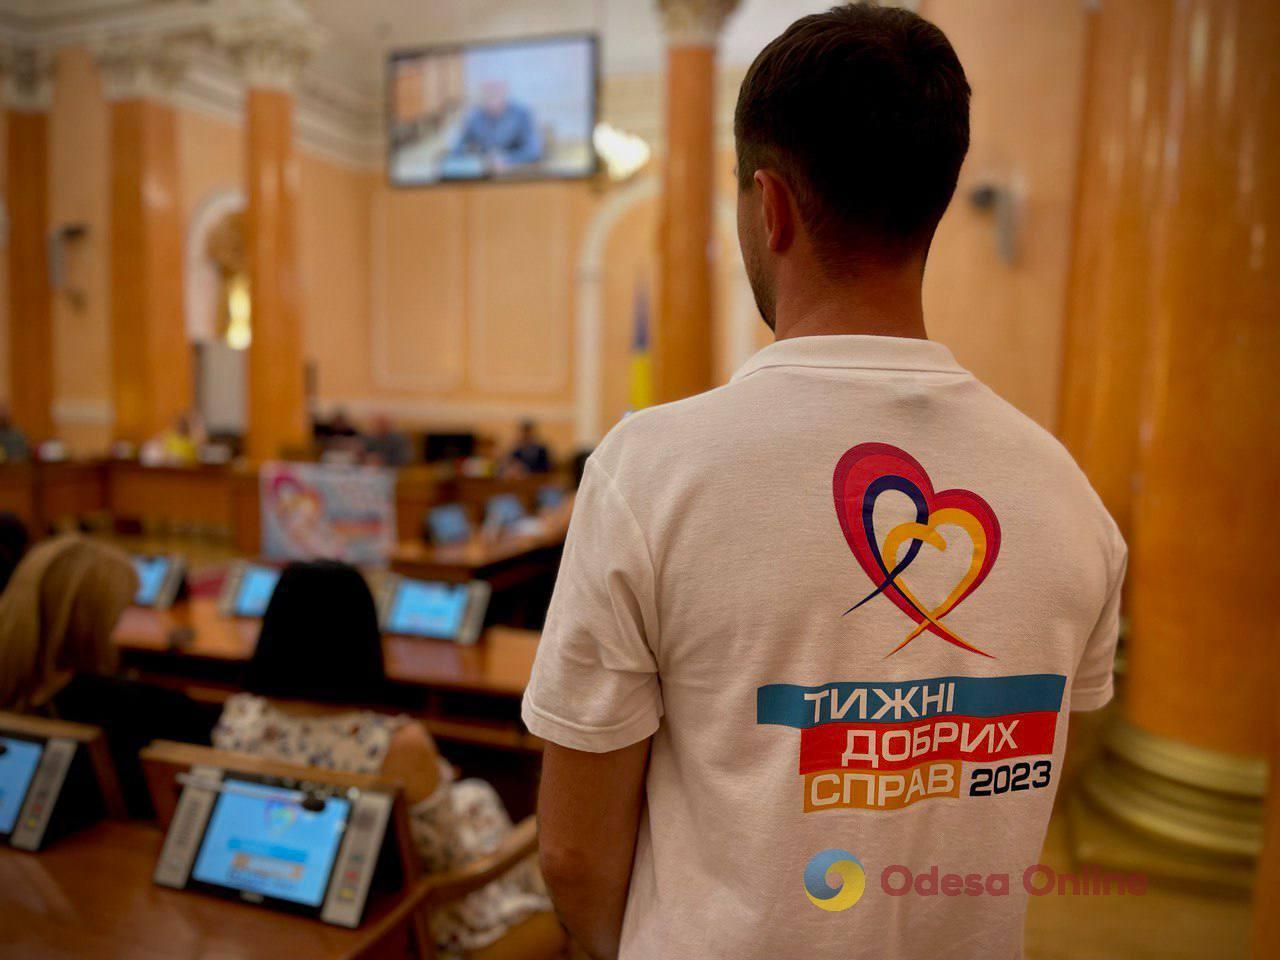 Одесса: в рамках марафона «Недели добрых дел» в Николаев и Херсон передали 80 тонн воды и 100 тонн гумпомощи